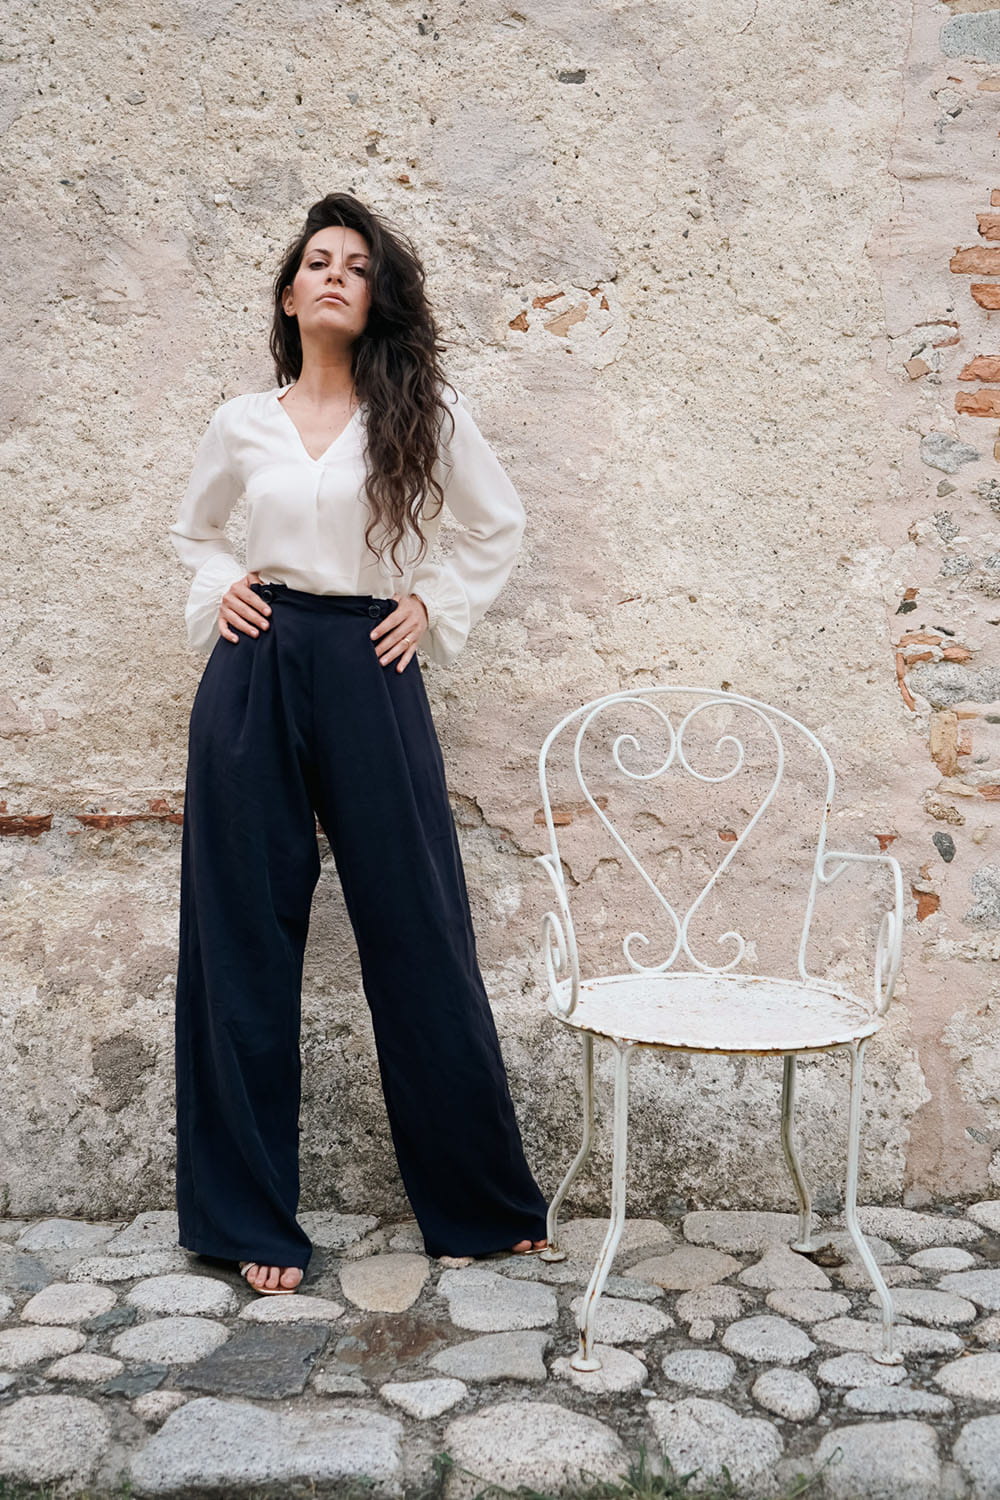 Pantalone tencel Gabriela indossato da Flavia Amato malia lab atelier artigianale moda abbigliamento sostenibile tessuto delicato e scivolato pantalone sartoriale sostenibile donna